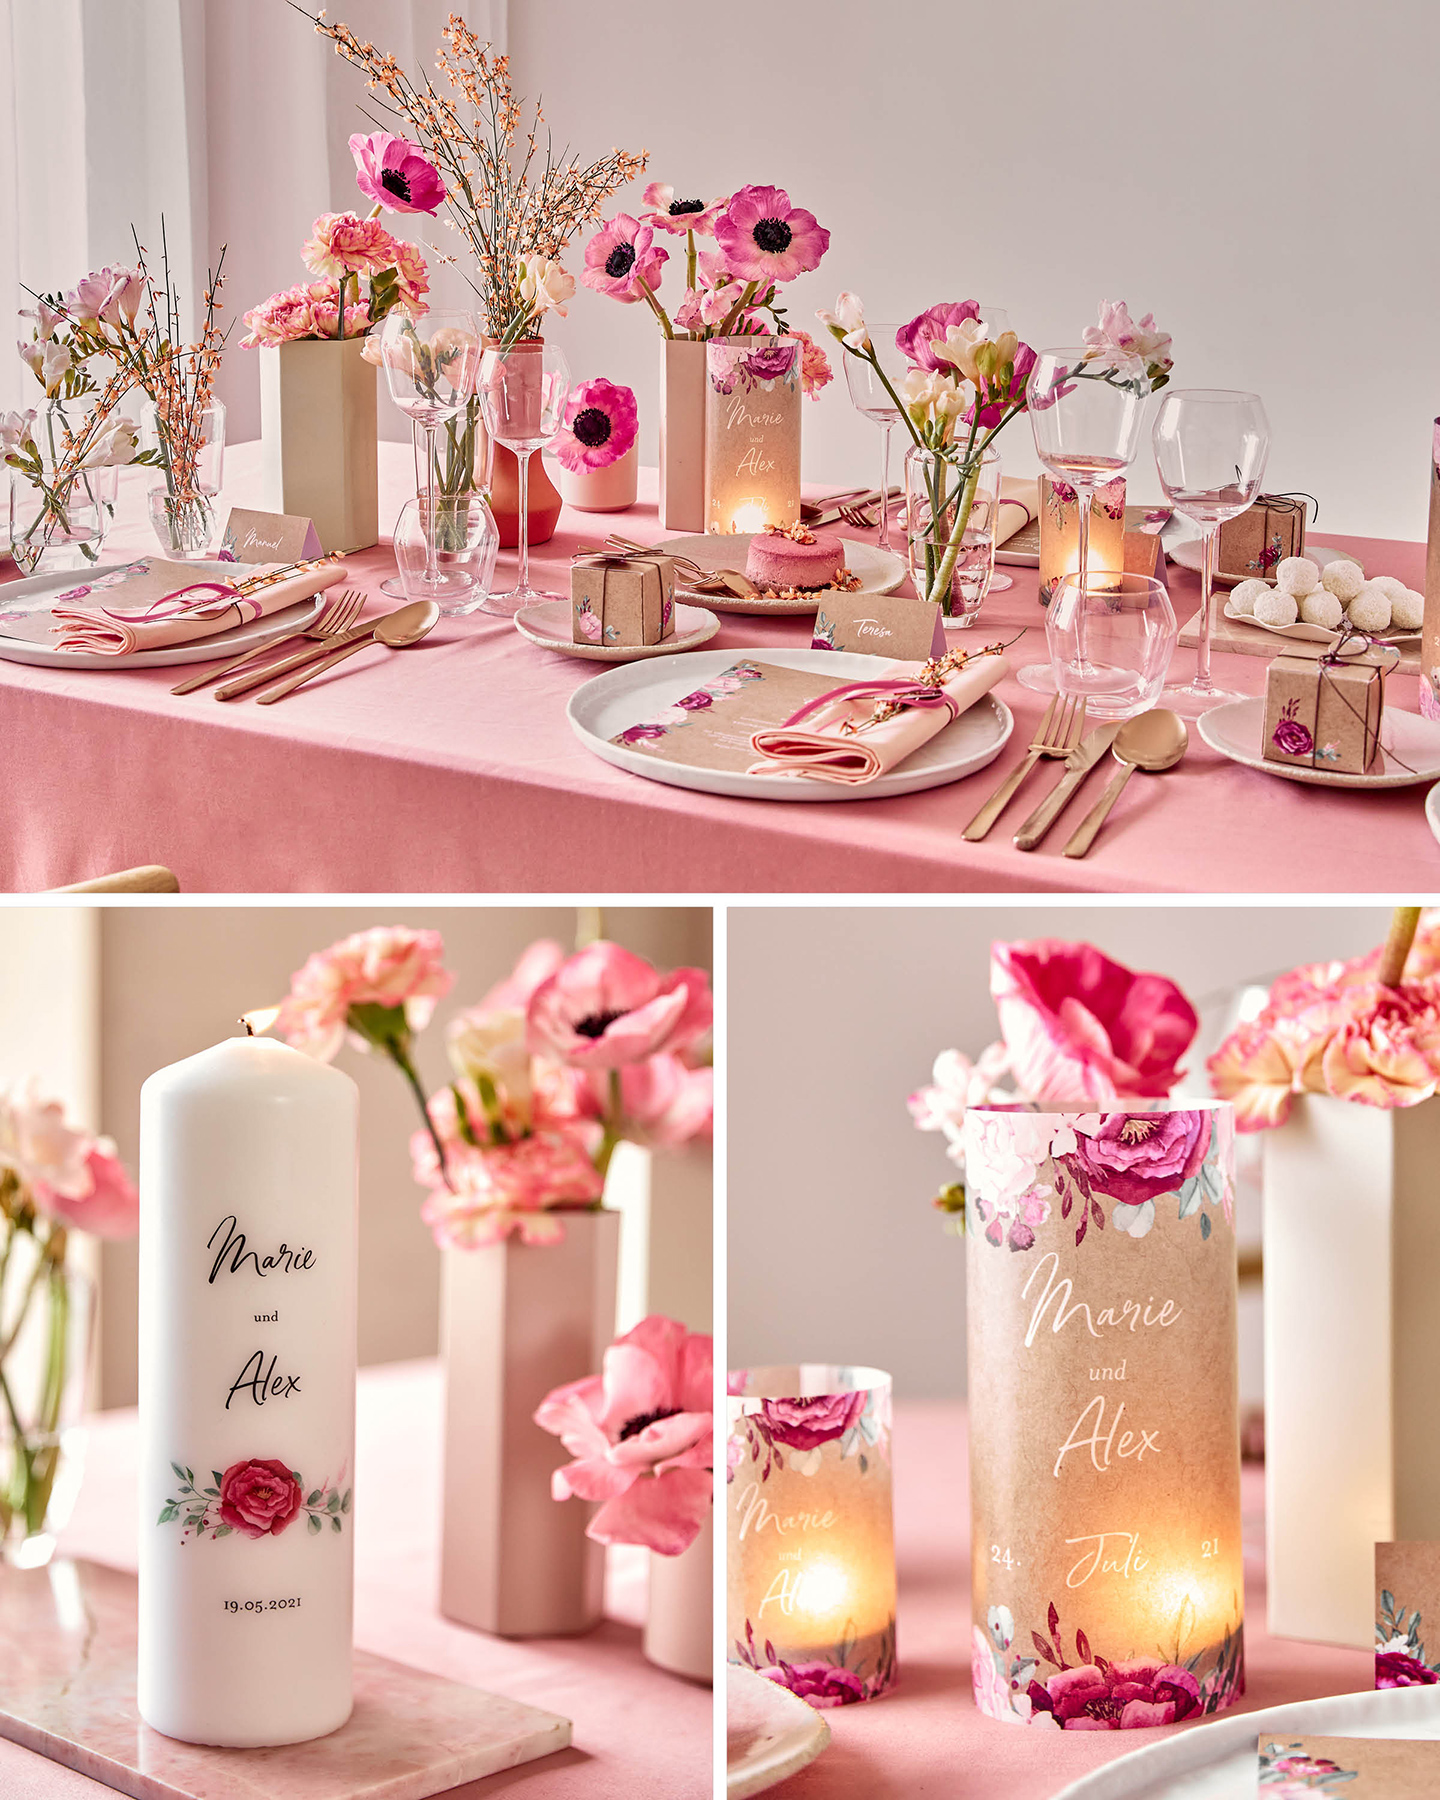 Gedeckte Hochzeitstafel in rosa Tönen und floralem Stil. Für die gemütliche Atmosphäre sorgen Windlichter und personalisierte Kerzen.